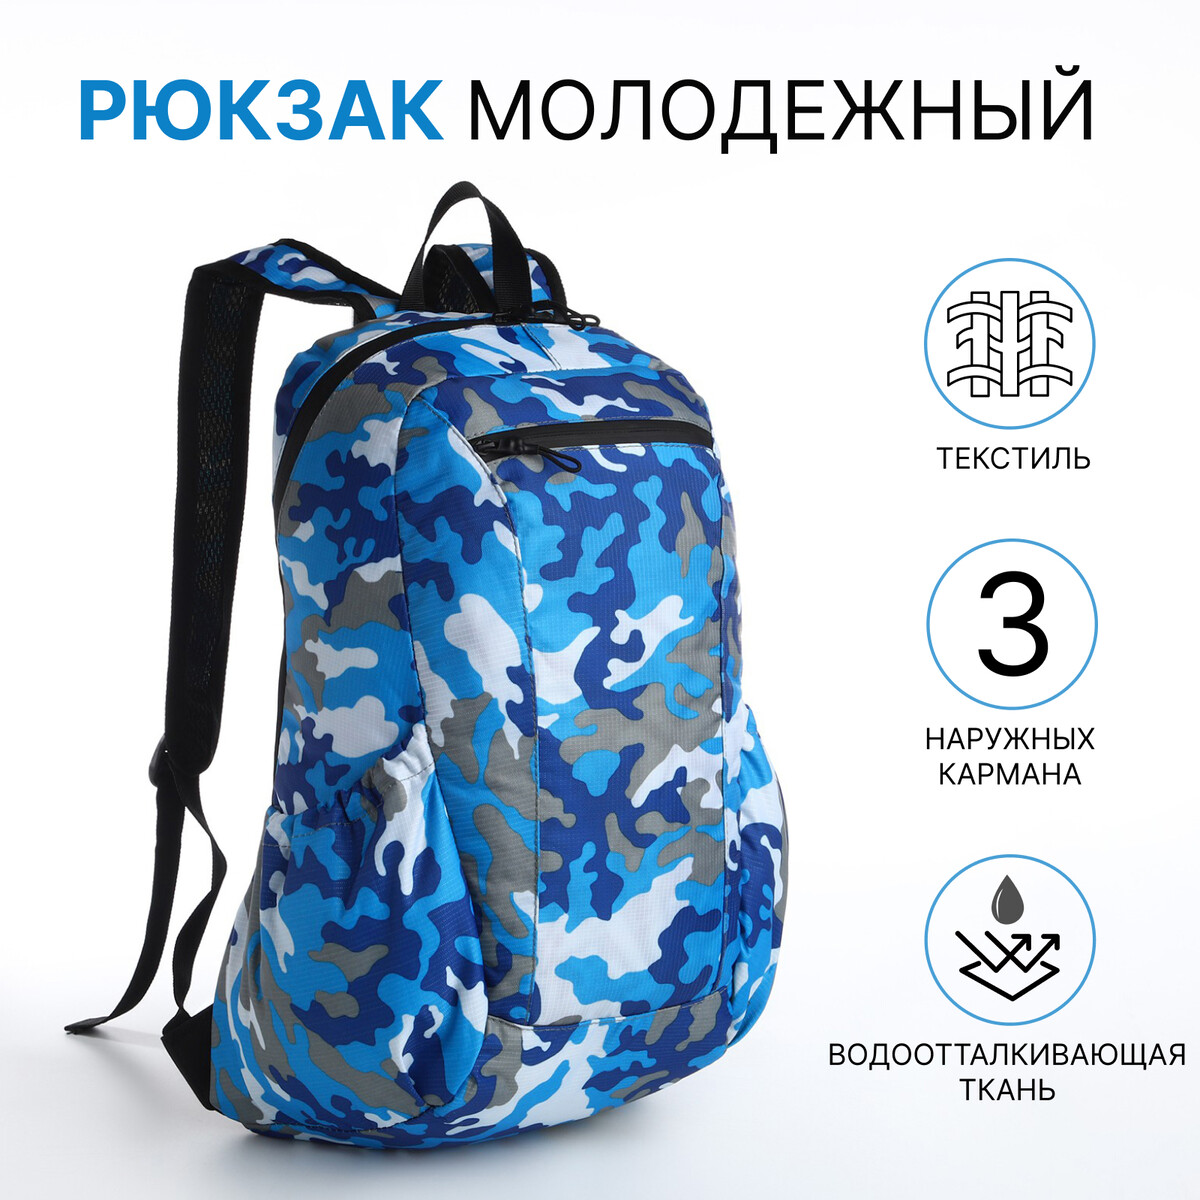 Рюкзак молодежный, водонепроницаемый на молнии, 3 кармана, цвет голубой/синий рюкзак wenger next mars 611988 16 деним голубой 26 л